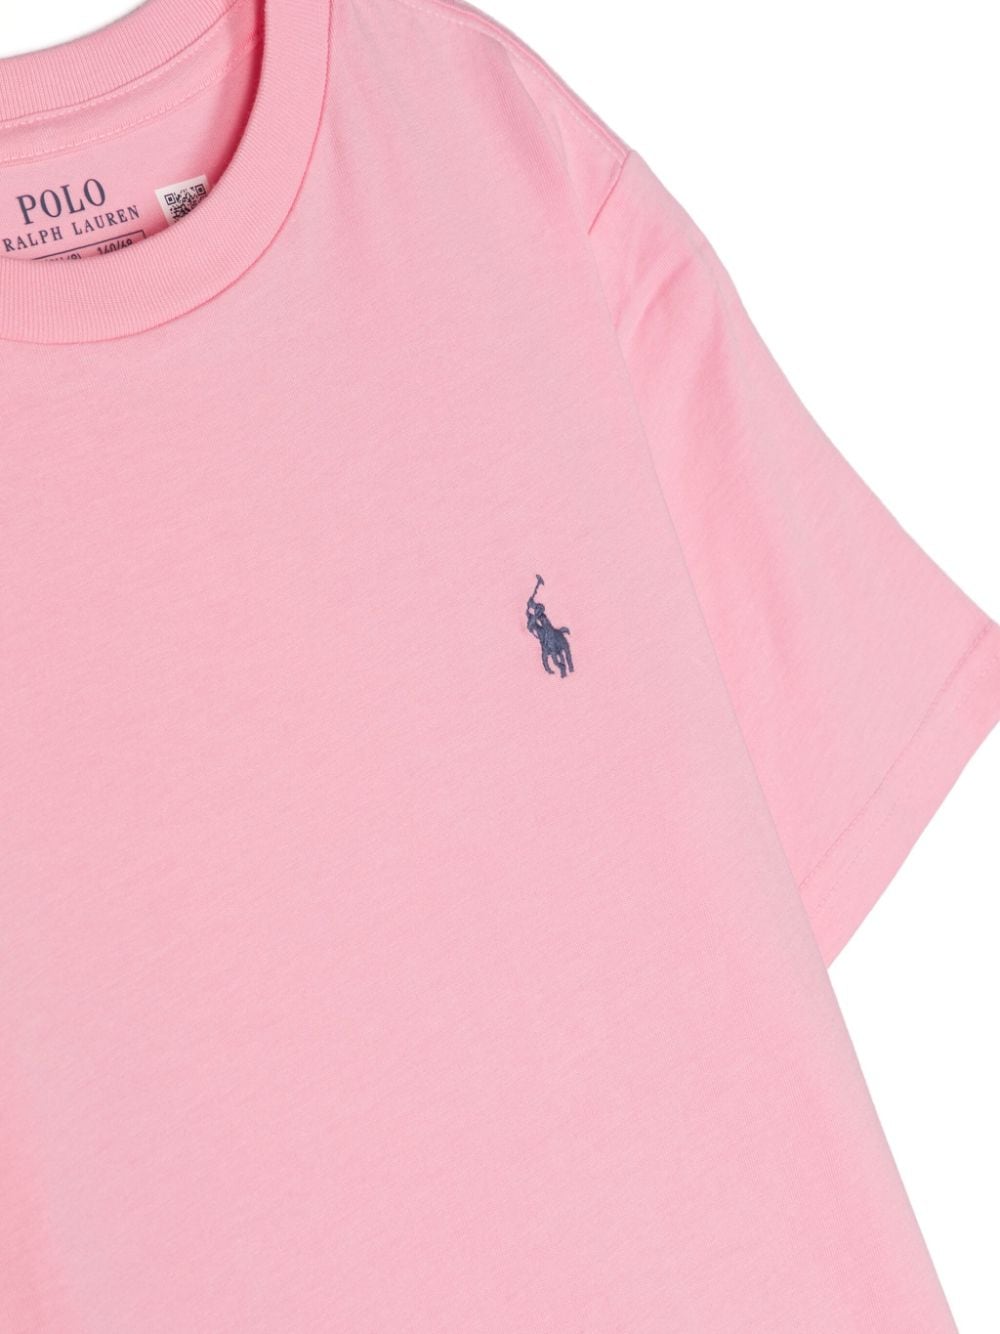 T-shirt rosa per bambino con logo